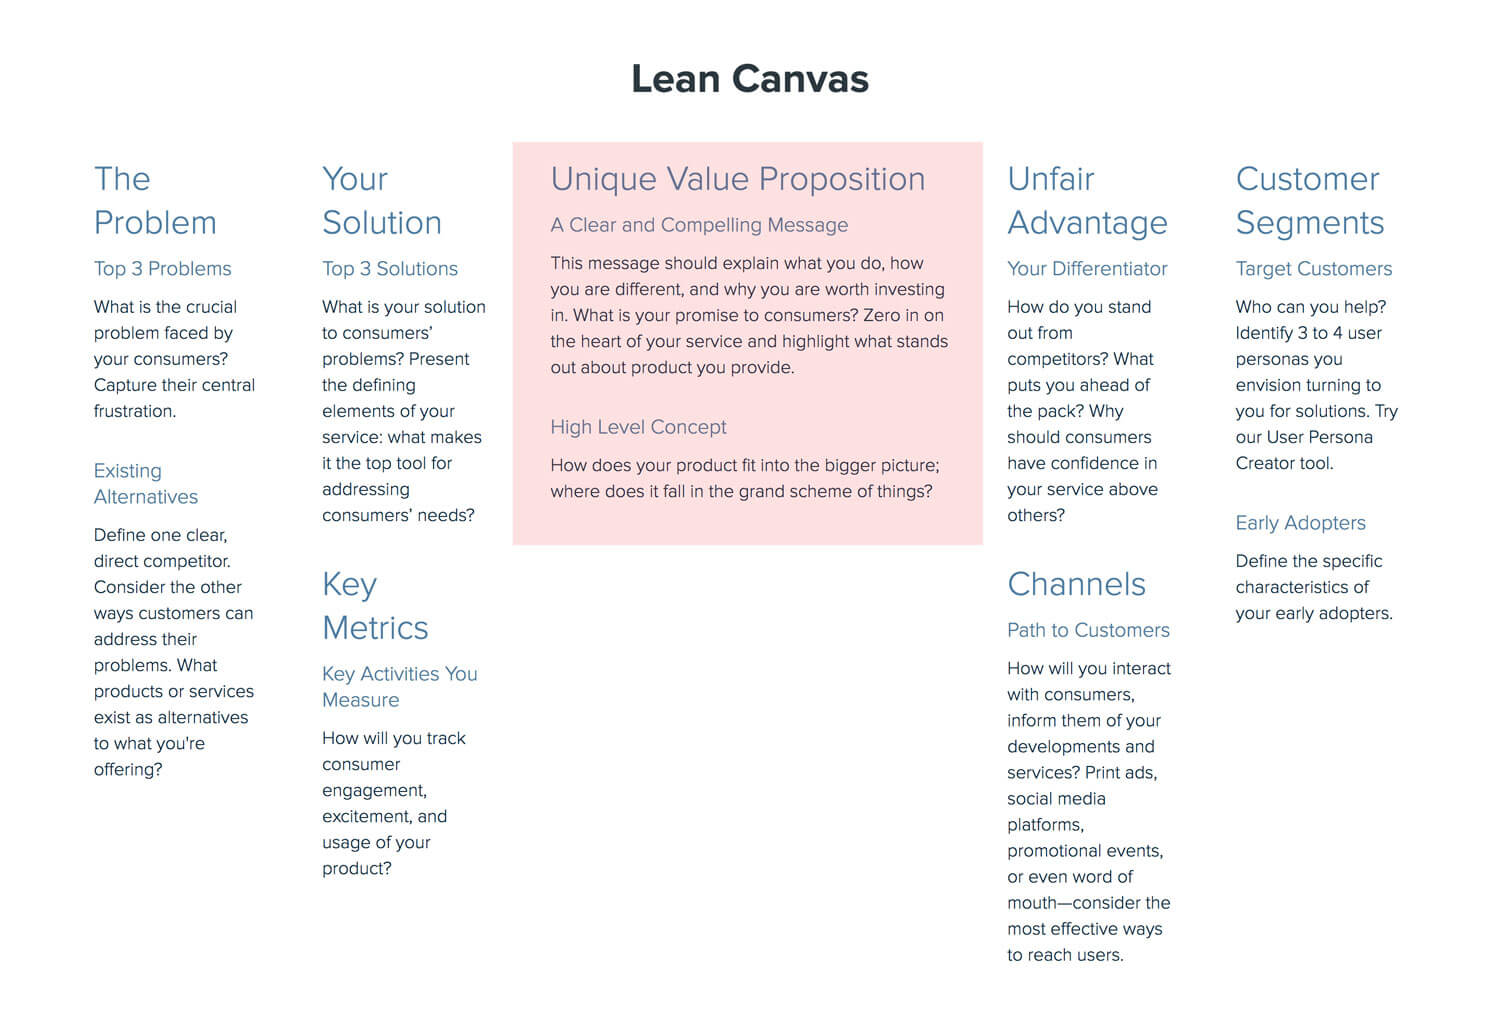 Lean Canvas: Unique Value Proposition and High-Level Concept